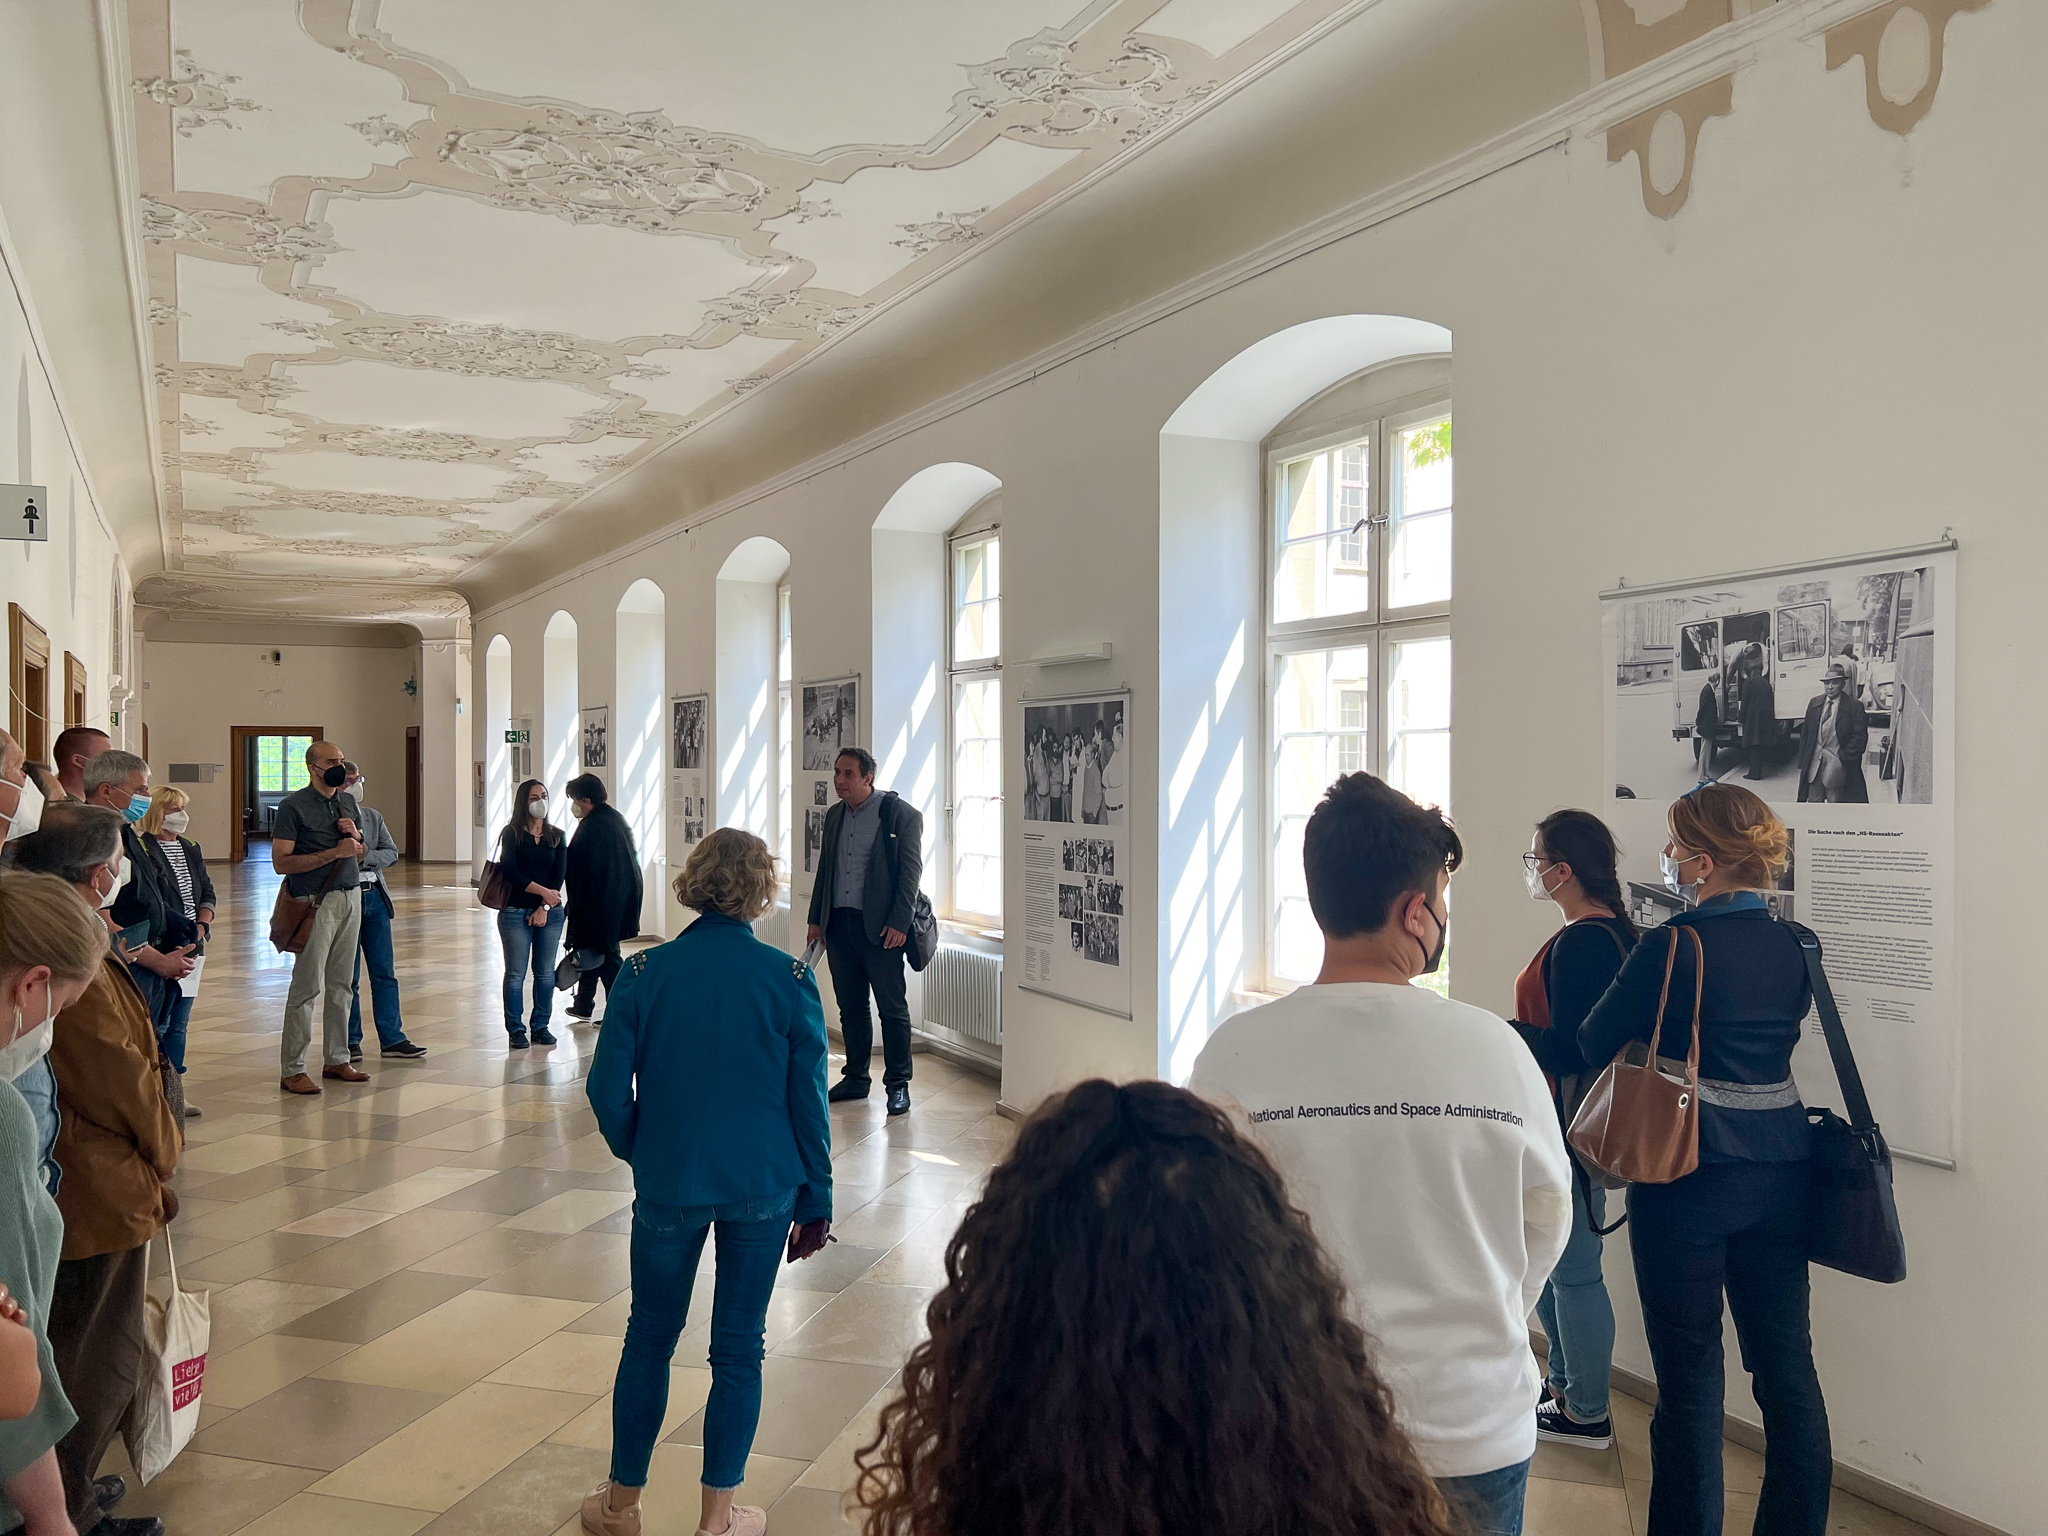 Blick in die Räumlichkeiten der PH Weingarten mit der Ausstellung zu 45 Bürgerrechtsarbeit